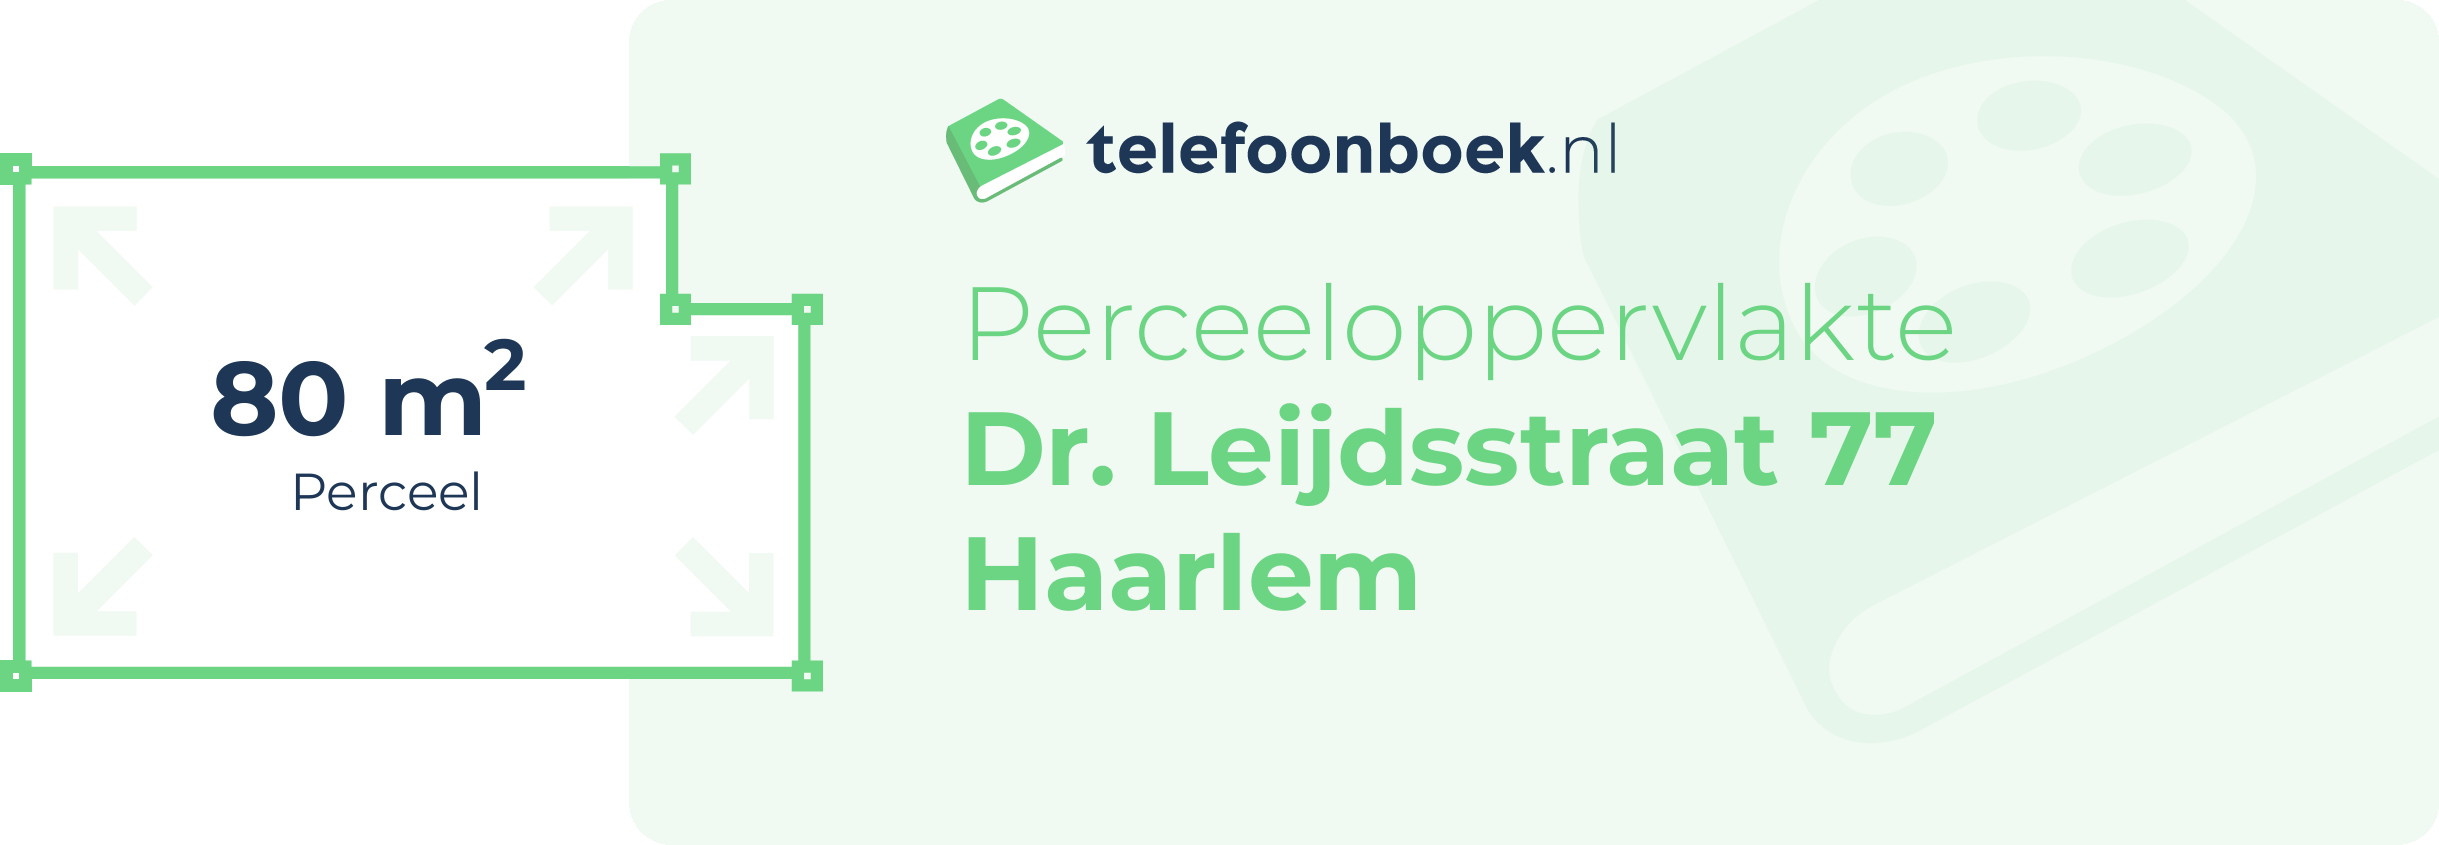 Perceeloppervlakte Dr. Leijdsstraat 77 Haarlem